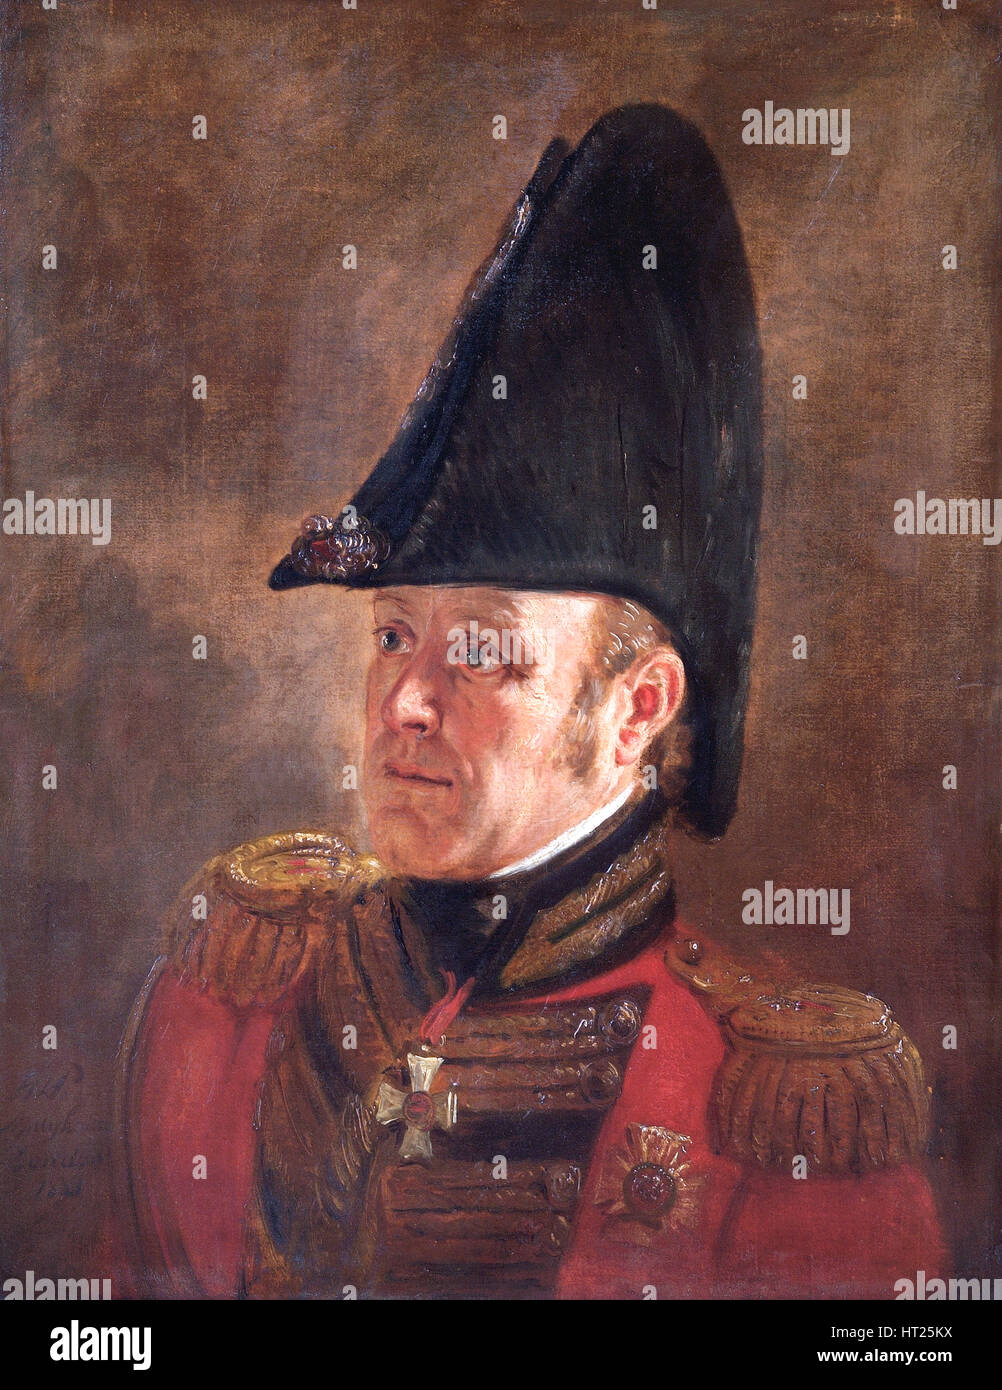 Portrait of General Sir George Cooke, British soldier, 1821. Artist: Jan Willem Pieneman. Stock Photo